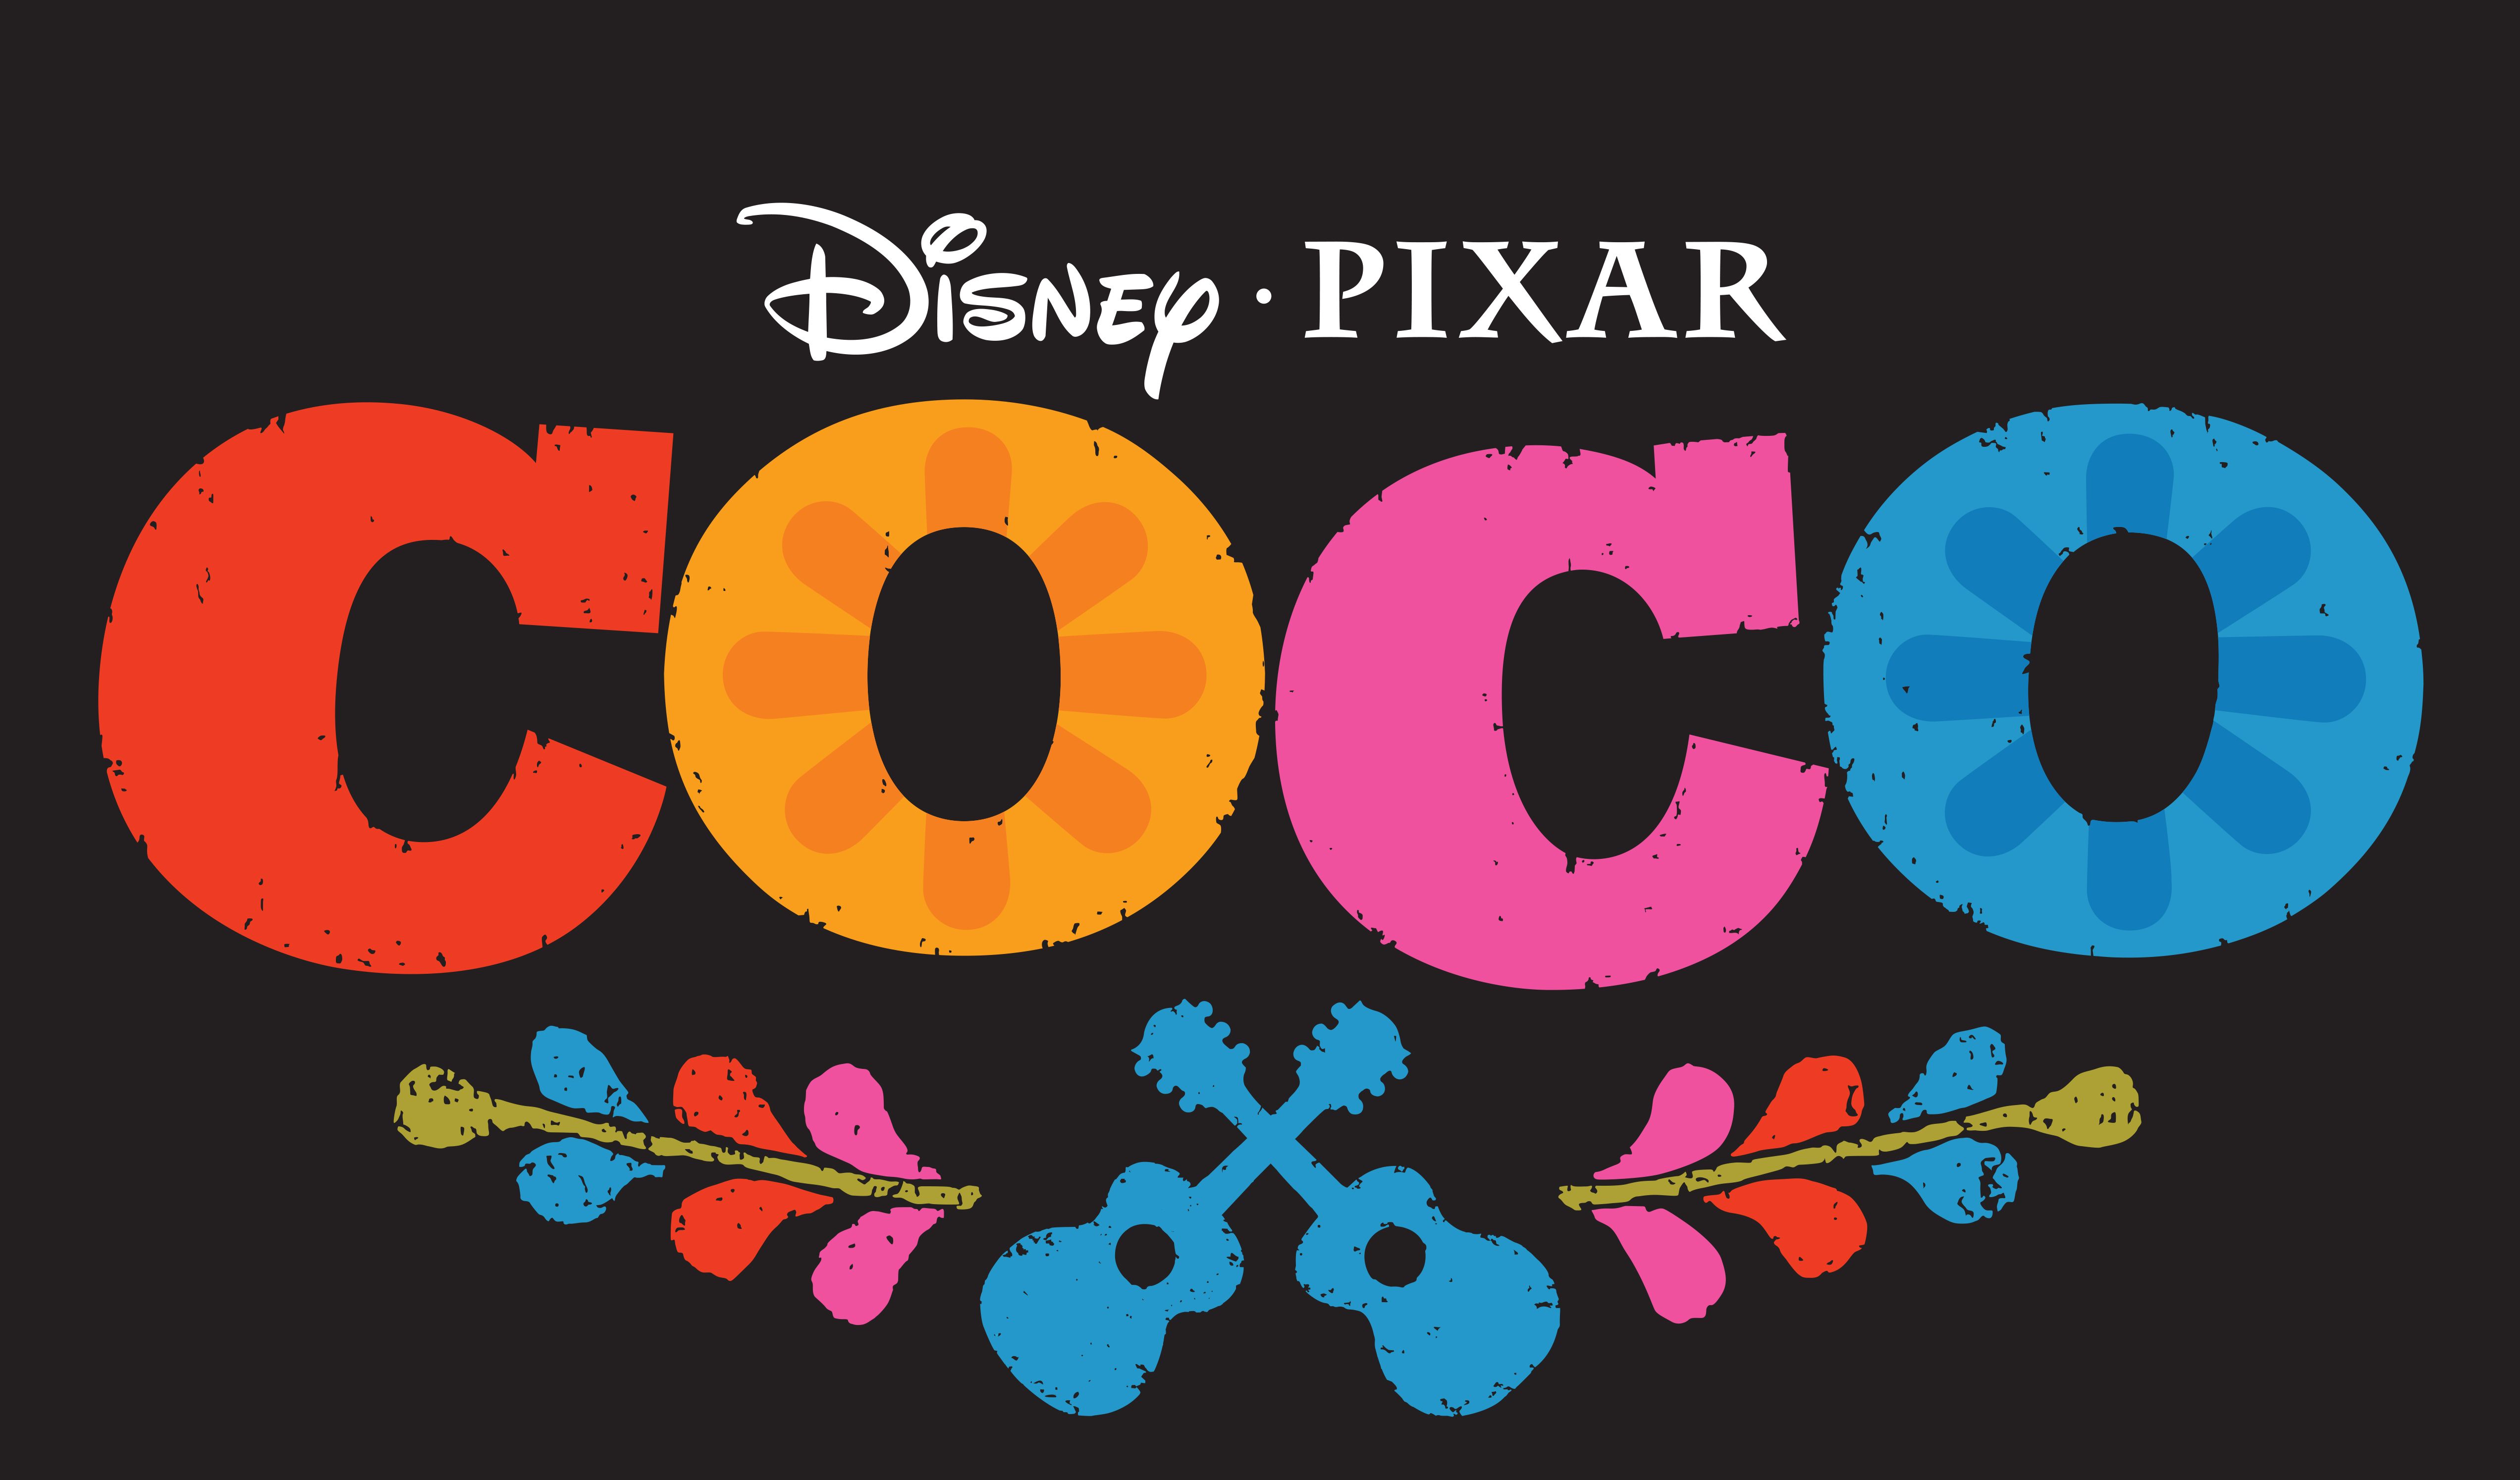 Pixar’s Coco, İkonik Sənətçi Frida Kahloya hörmət edəcəkdir